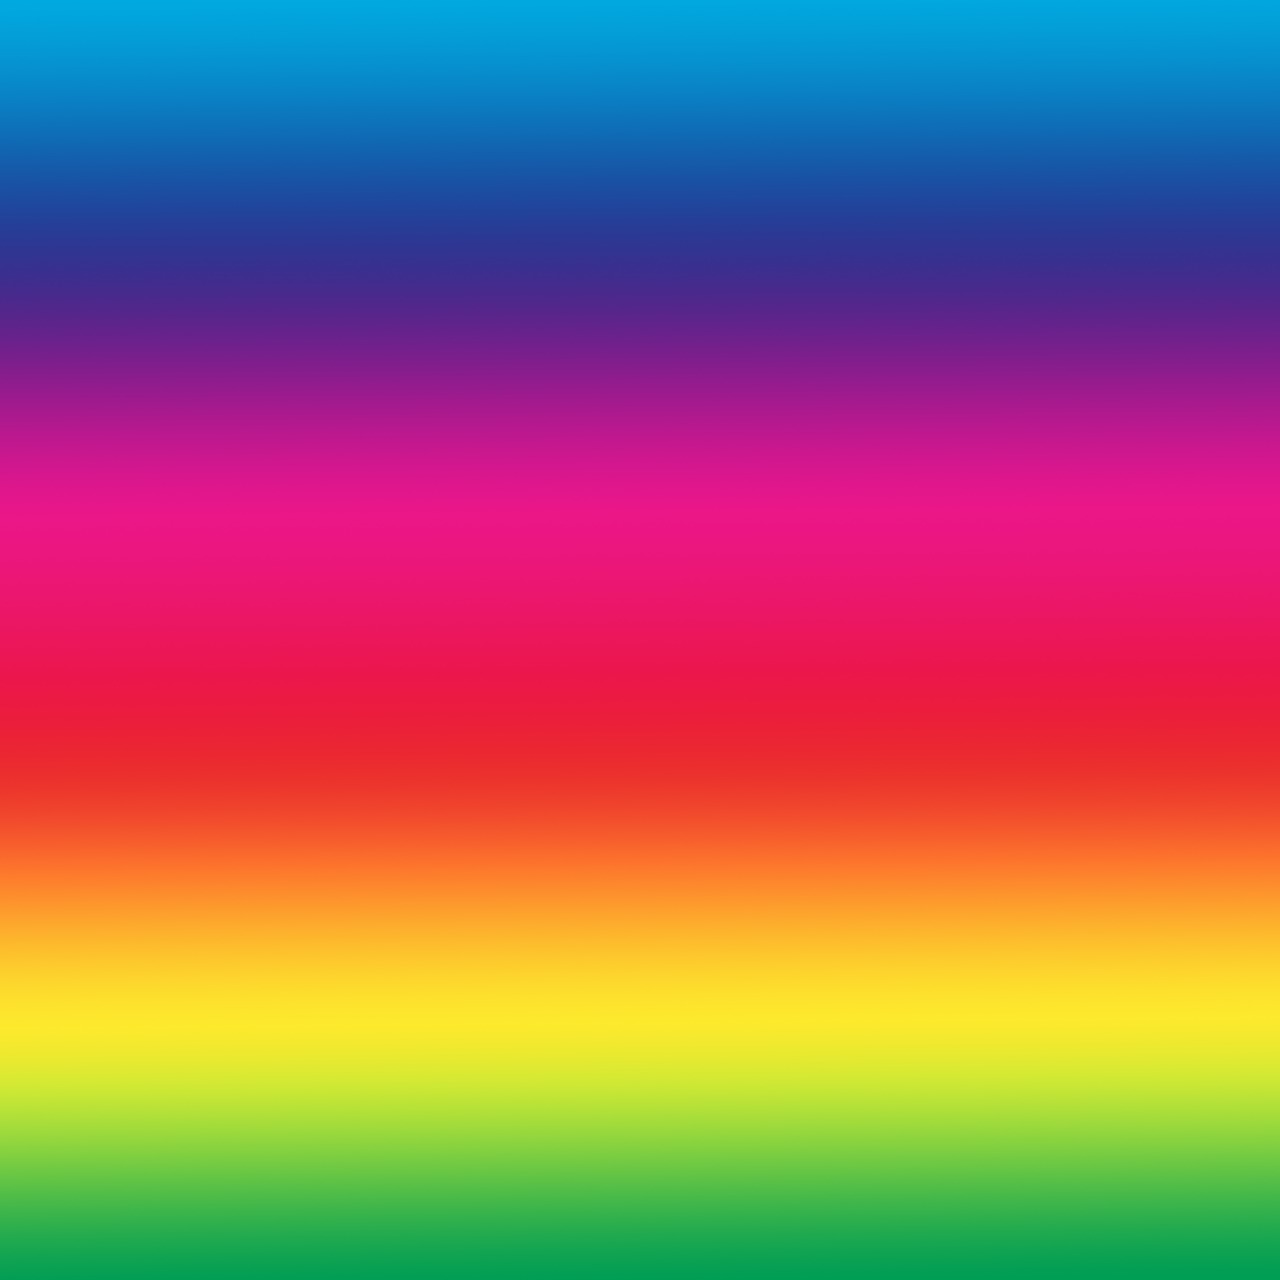 spectrum background rainbow free photo